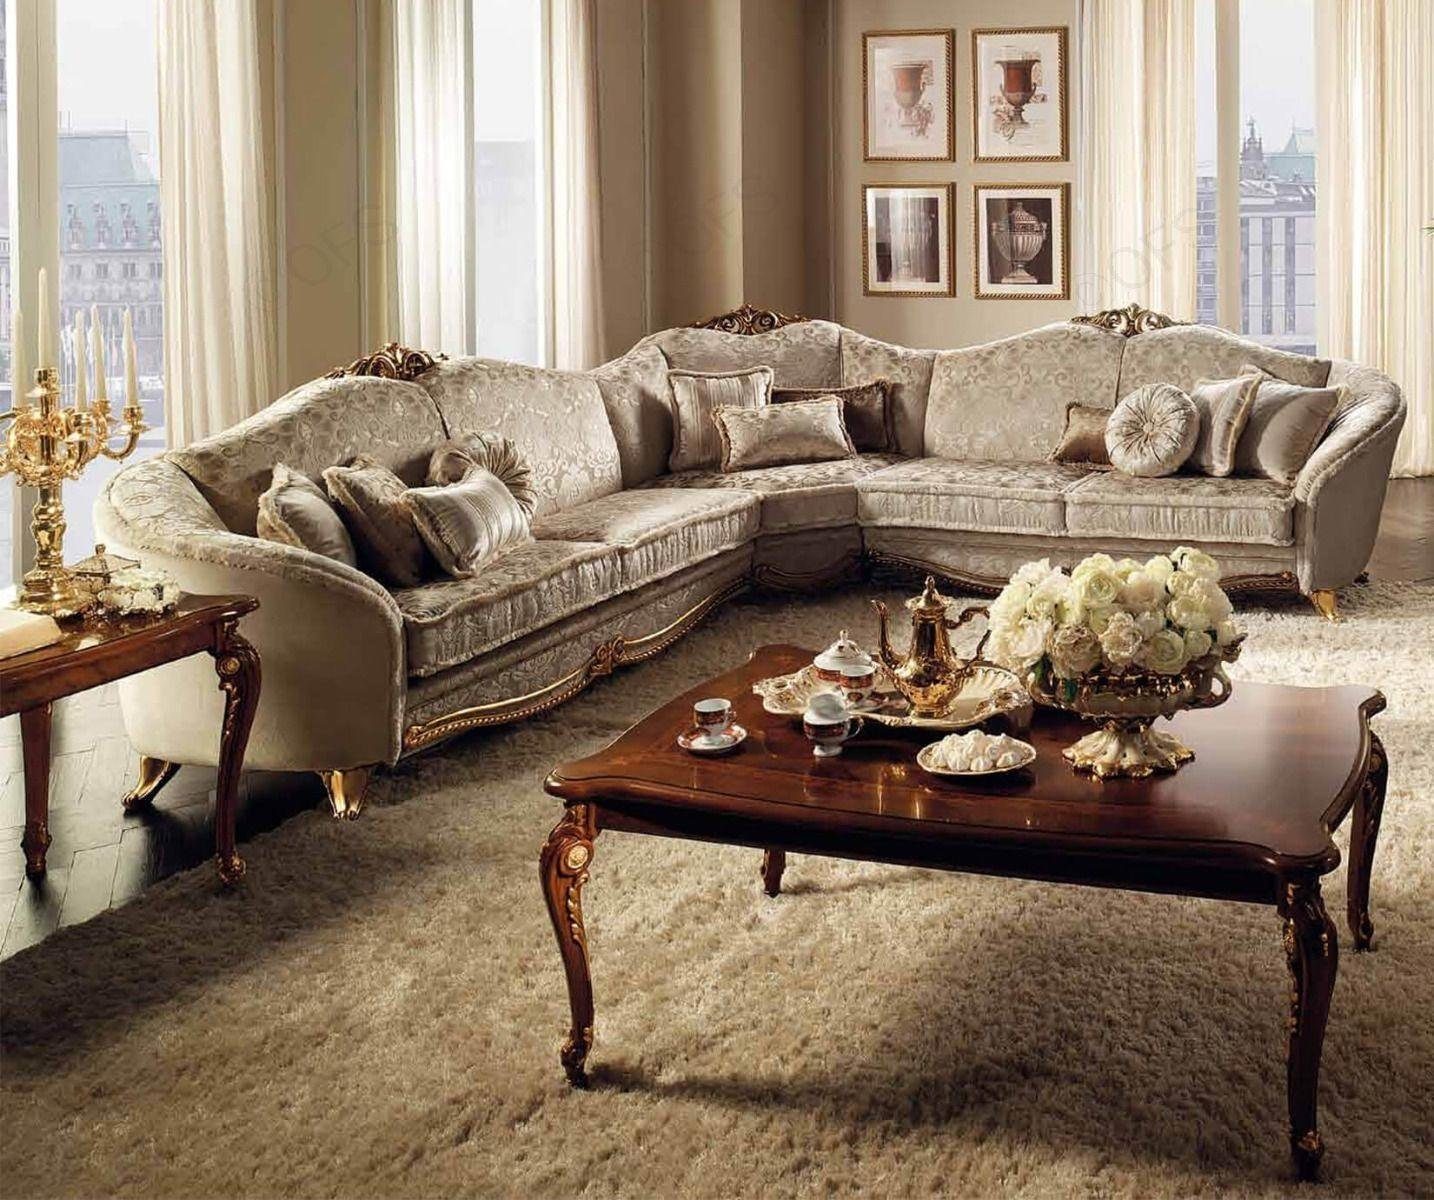 JVmoebel Wohnzimmer-Set Ecksofa Wohnlandschaft Sofa Textil Polster Couch Form Couchen L